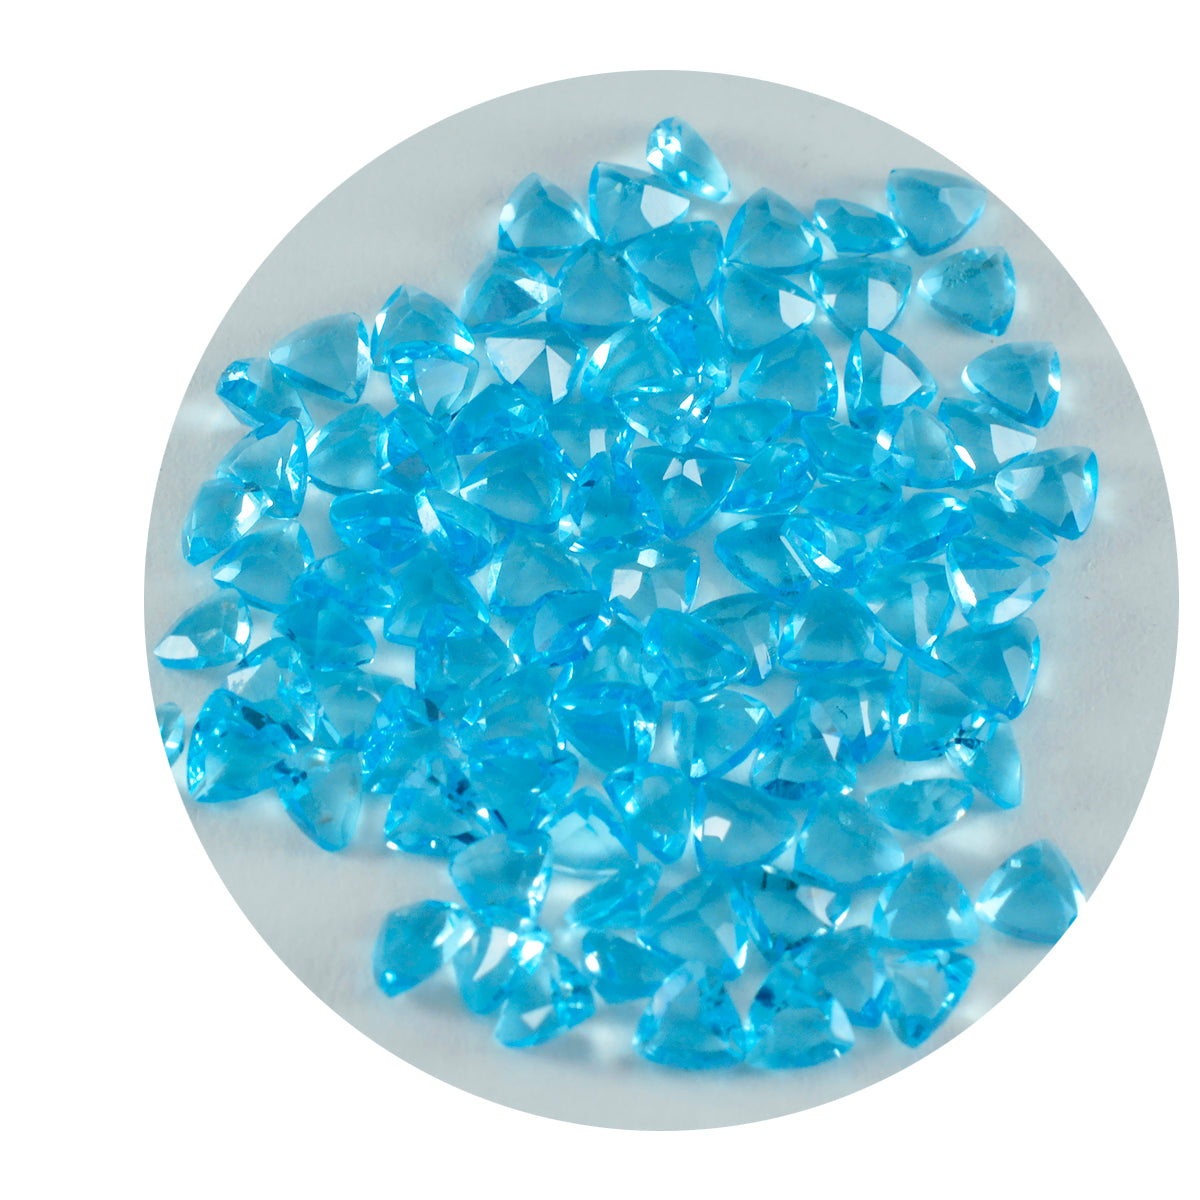 riyogems 1 шт., синий топаз, граненый драгоценный камень 4x4 мм, форма триллиона, отличное качество